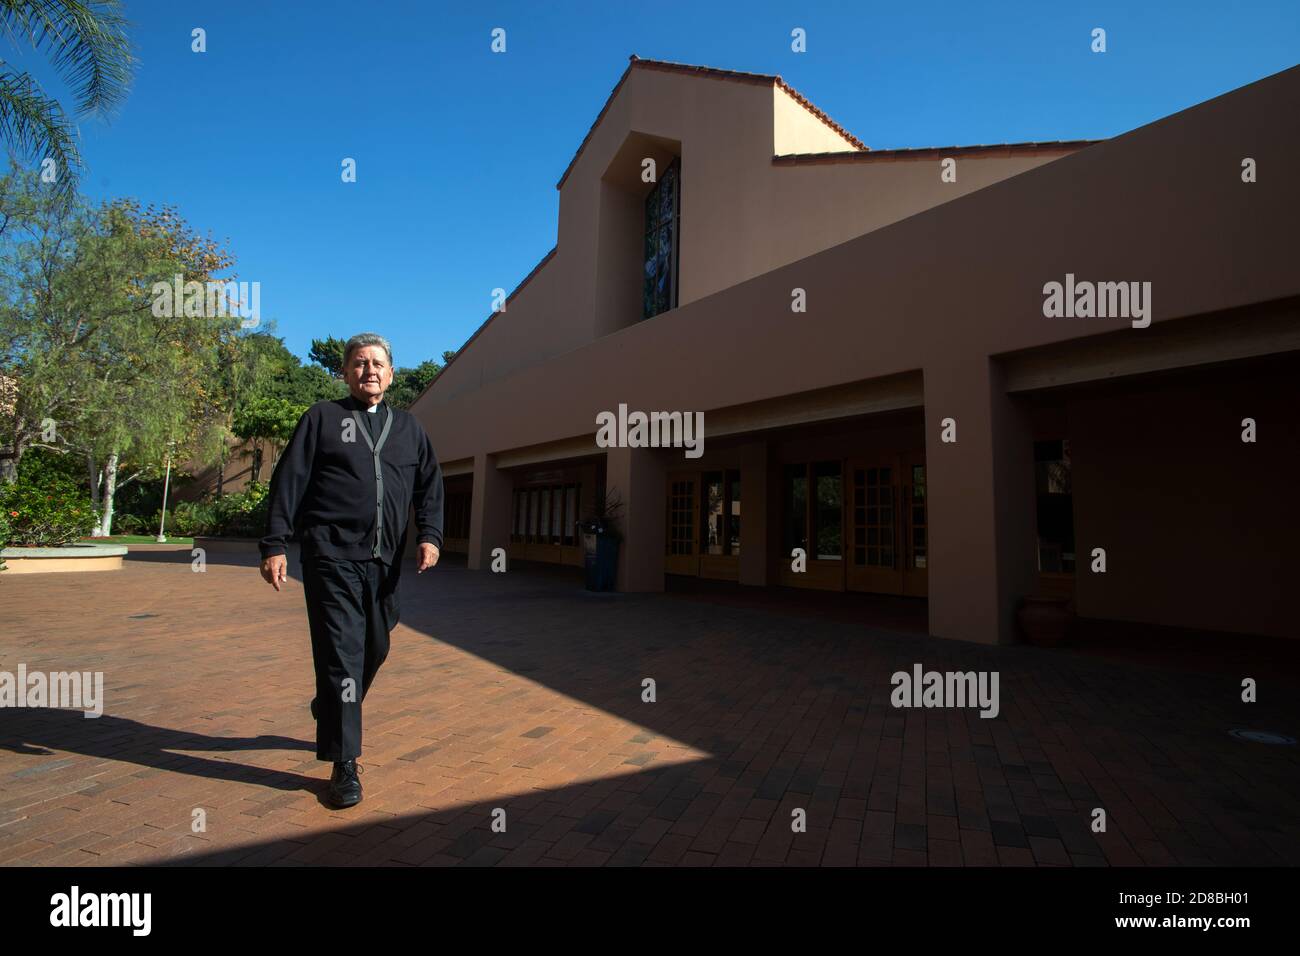 El monseñor de una iglesia católica del sur de California camina por el patio de la iglesia en después del sol y la sombra. Foto de stock